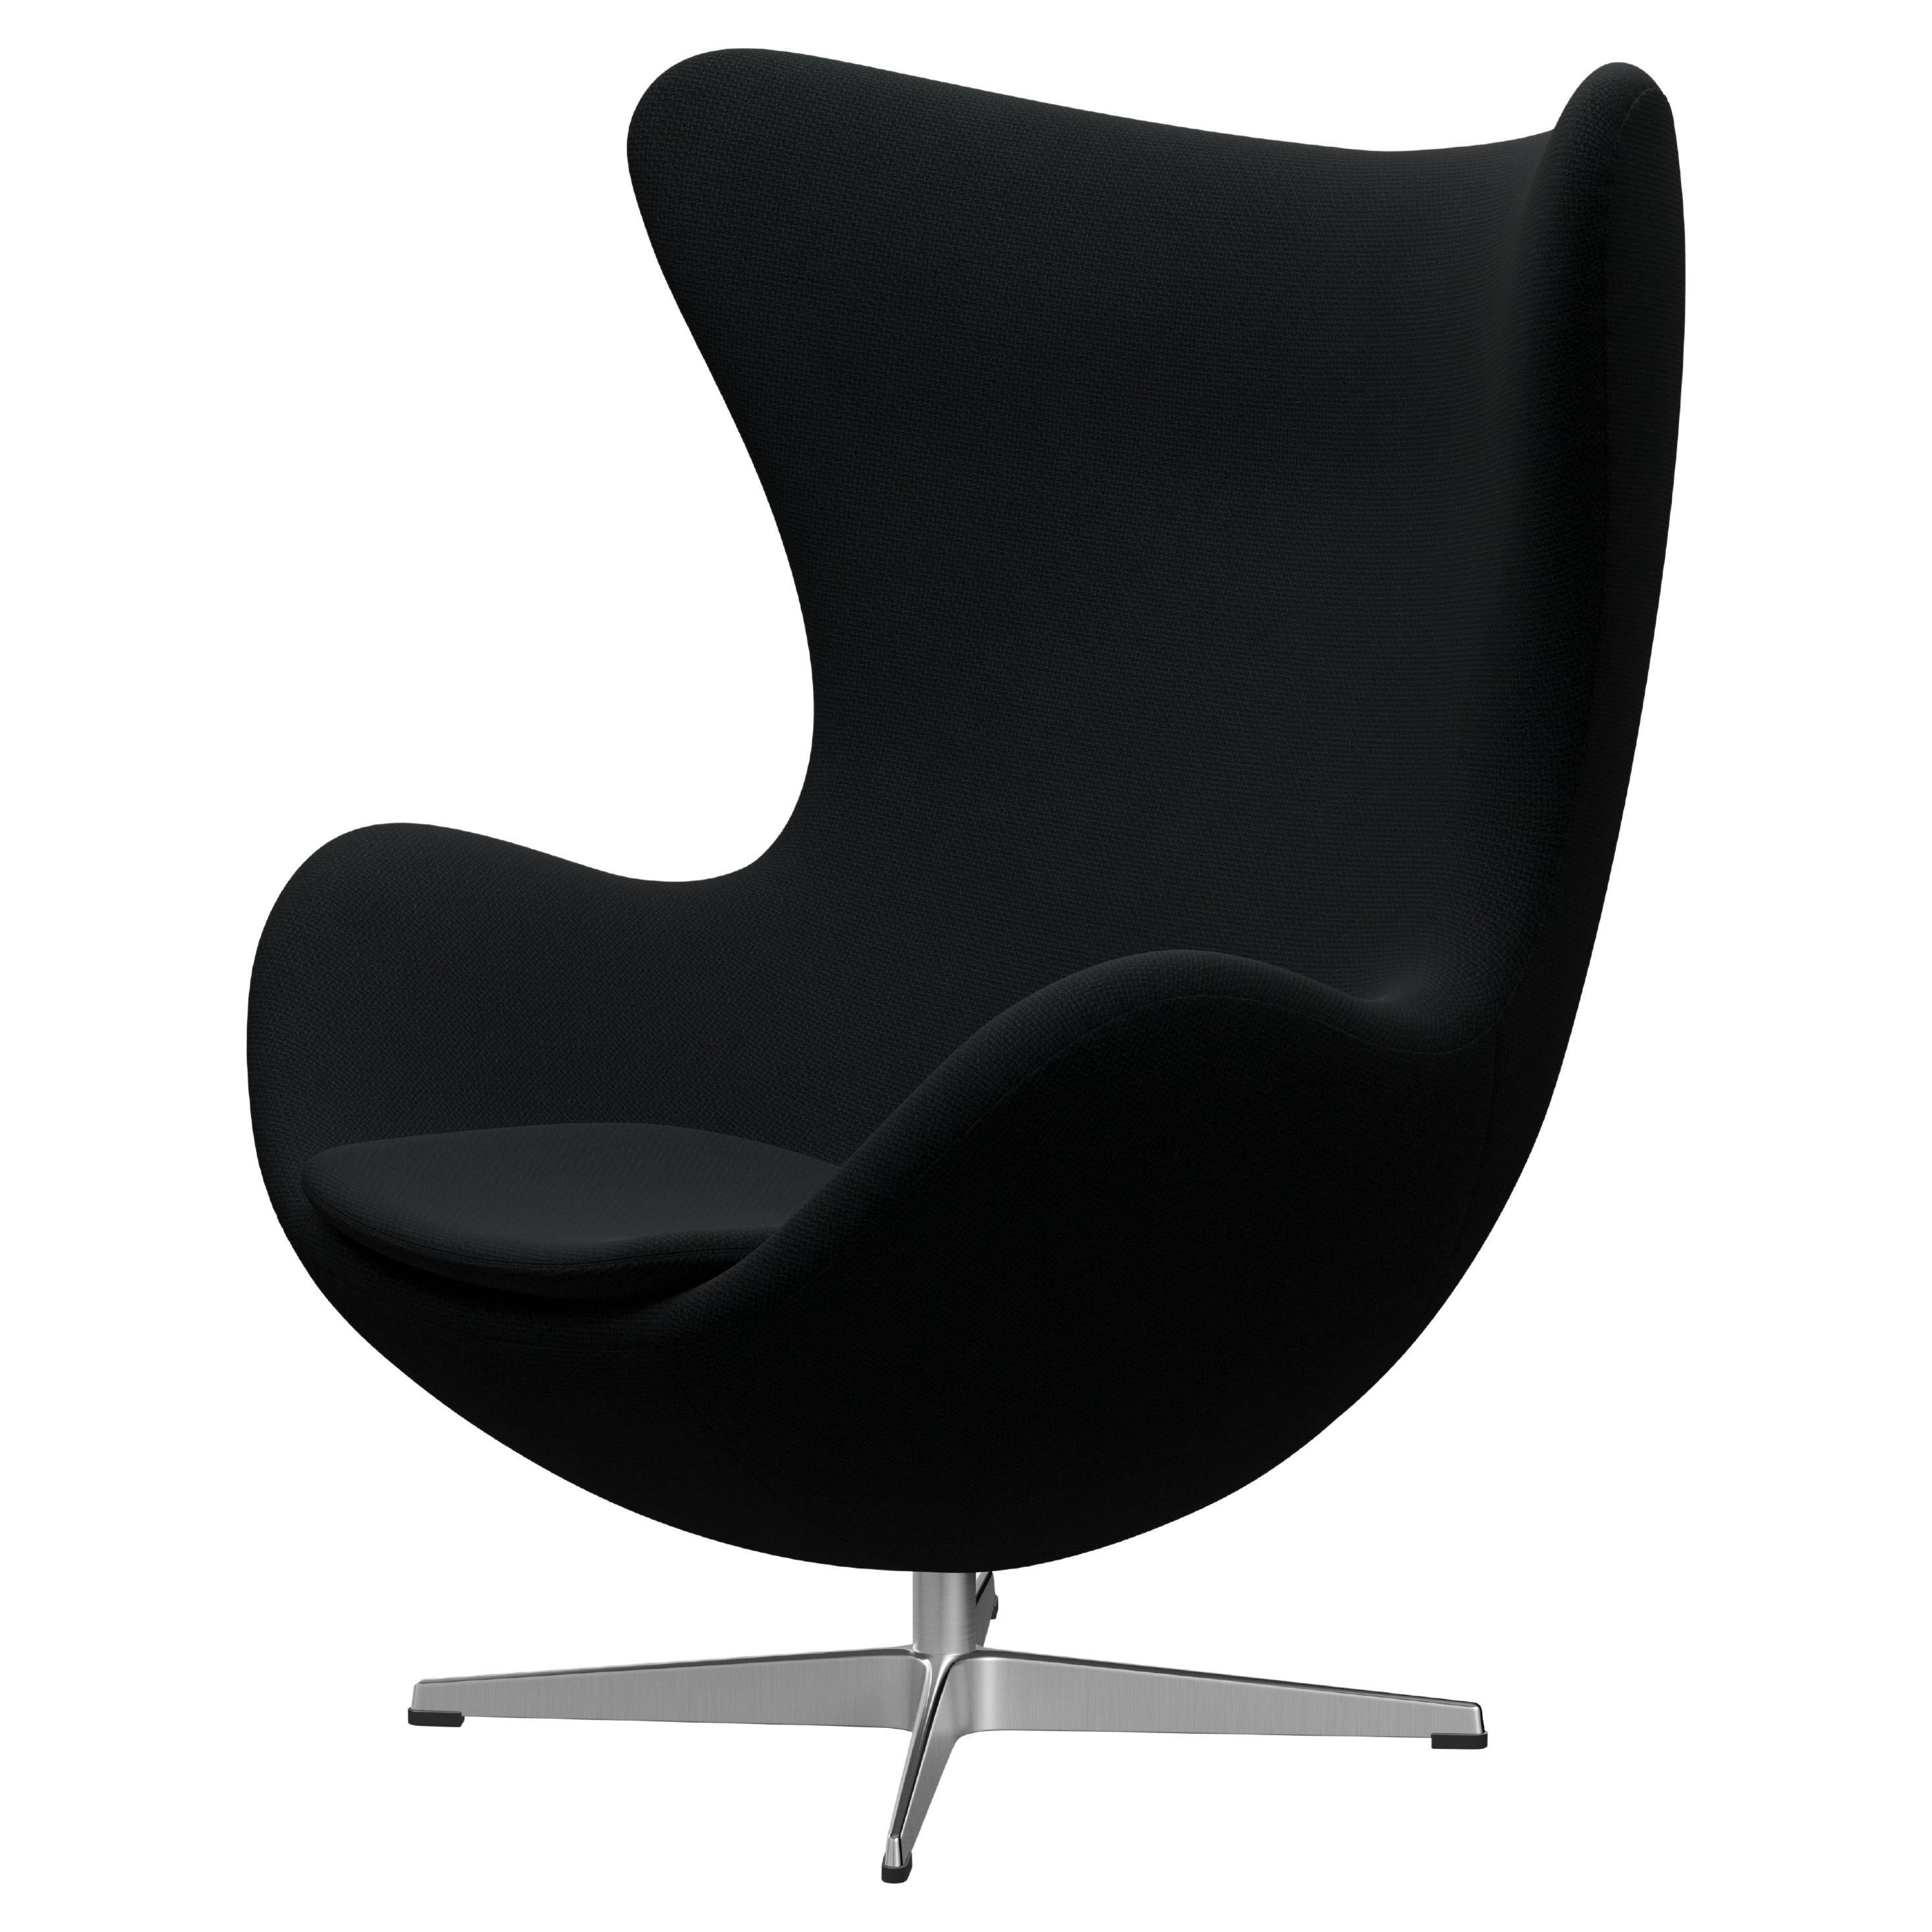 Arne Jacobsen 'Egg' Chair for Fritz Hansen in Fabric Upholstery (Cat. 1)